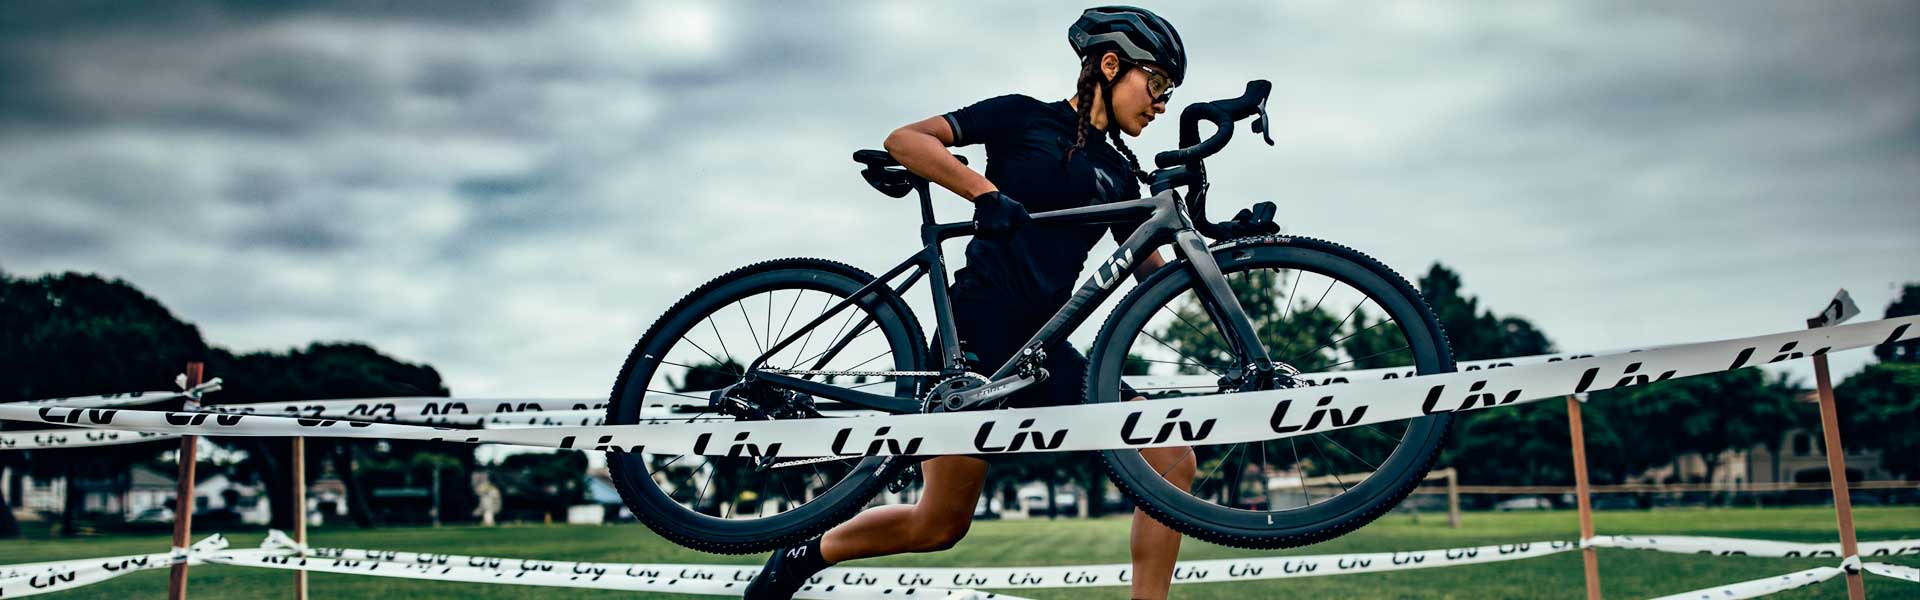 Cyclocross Bikes for Women Liv Cycling DE